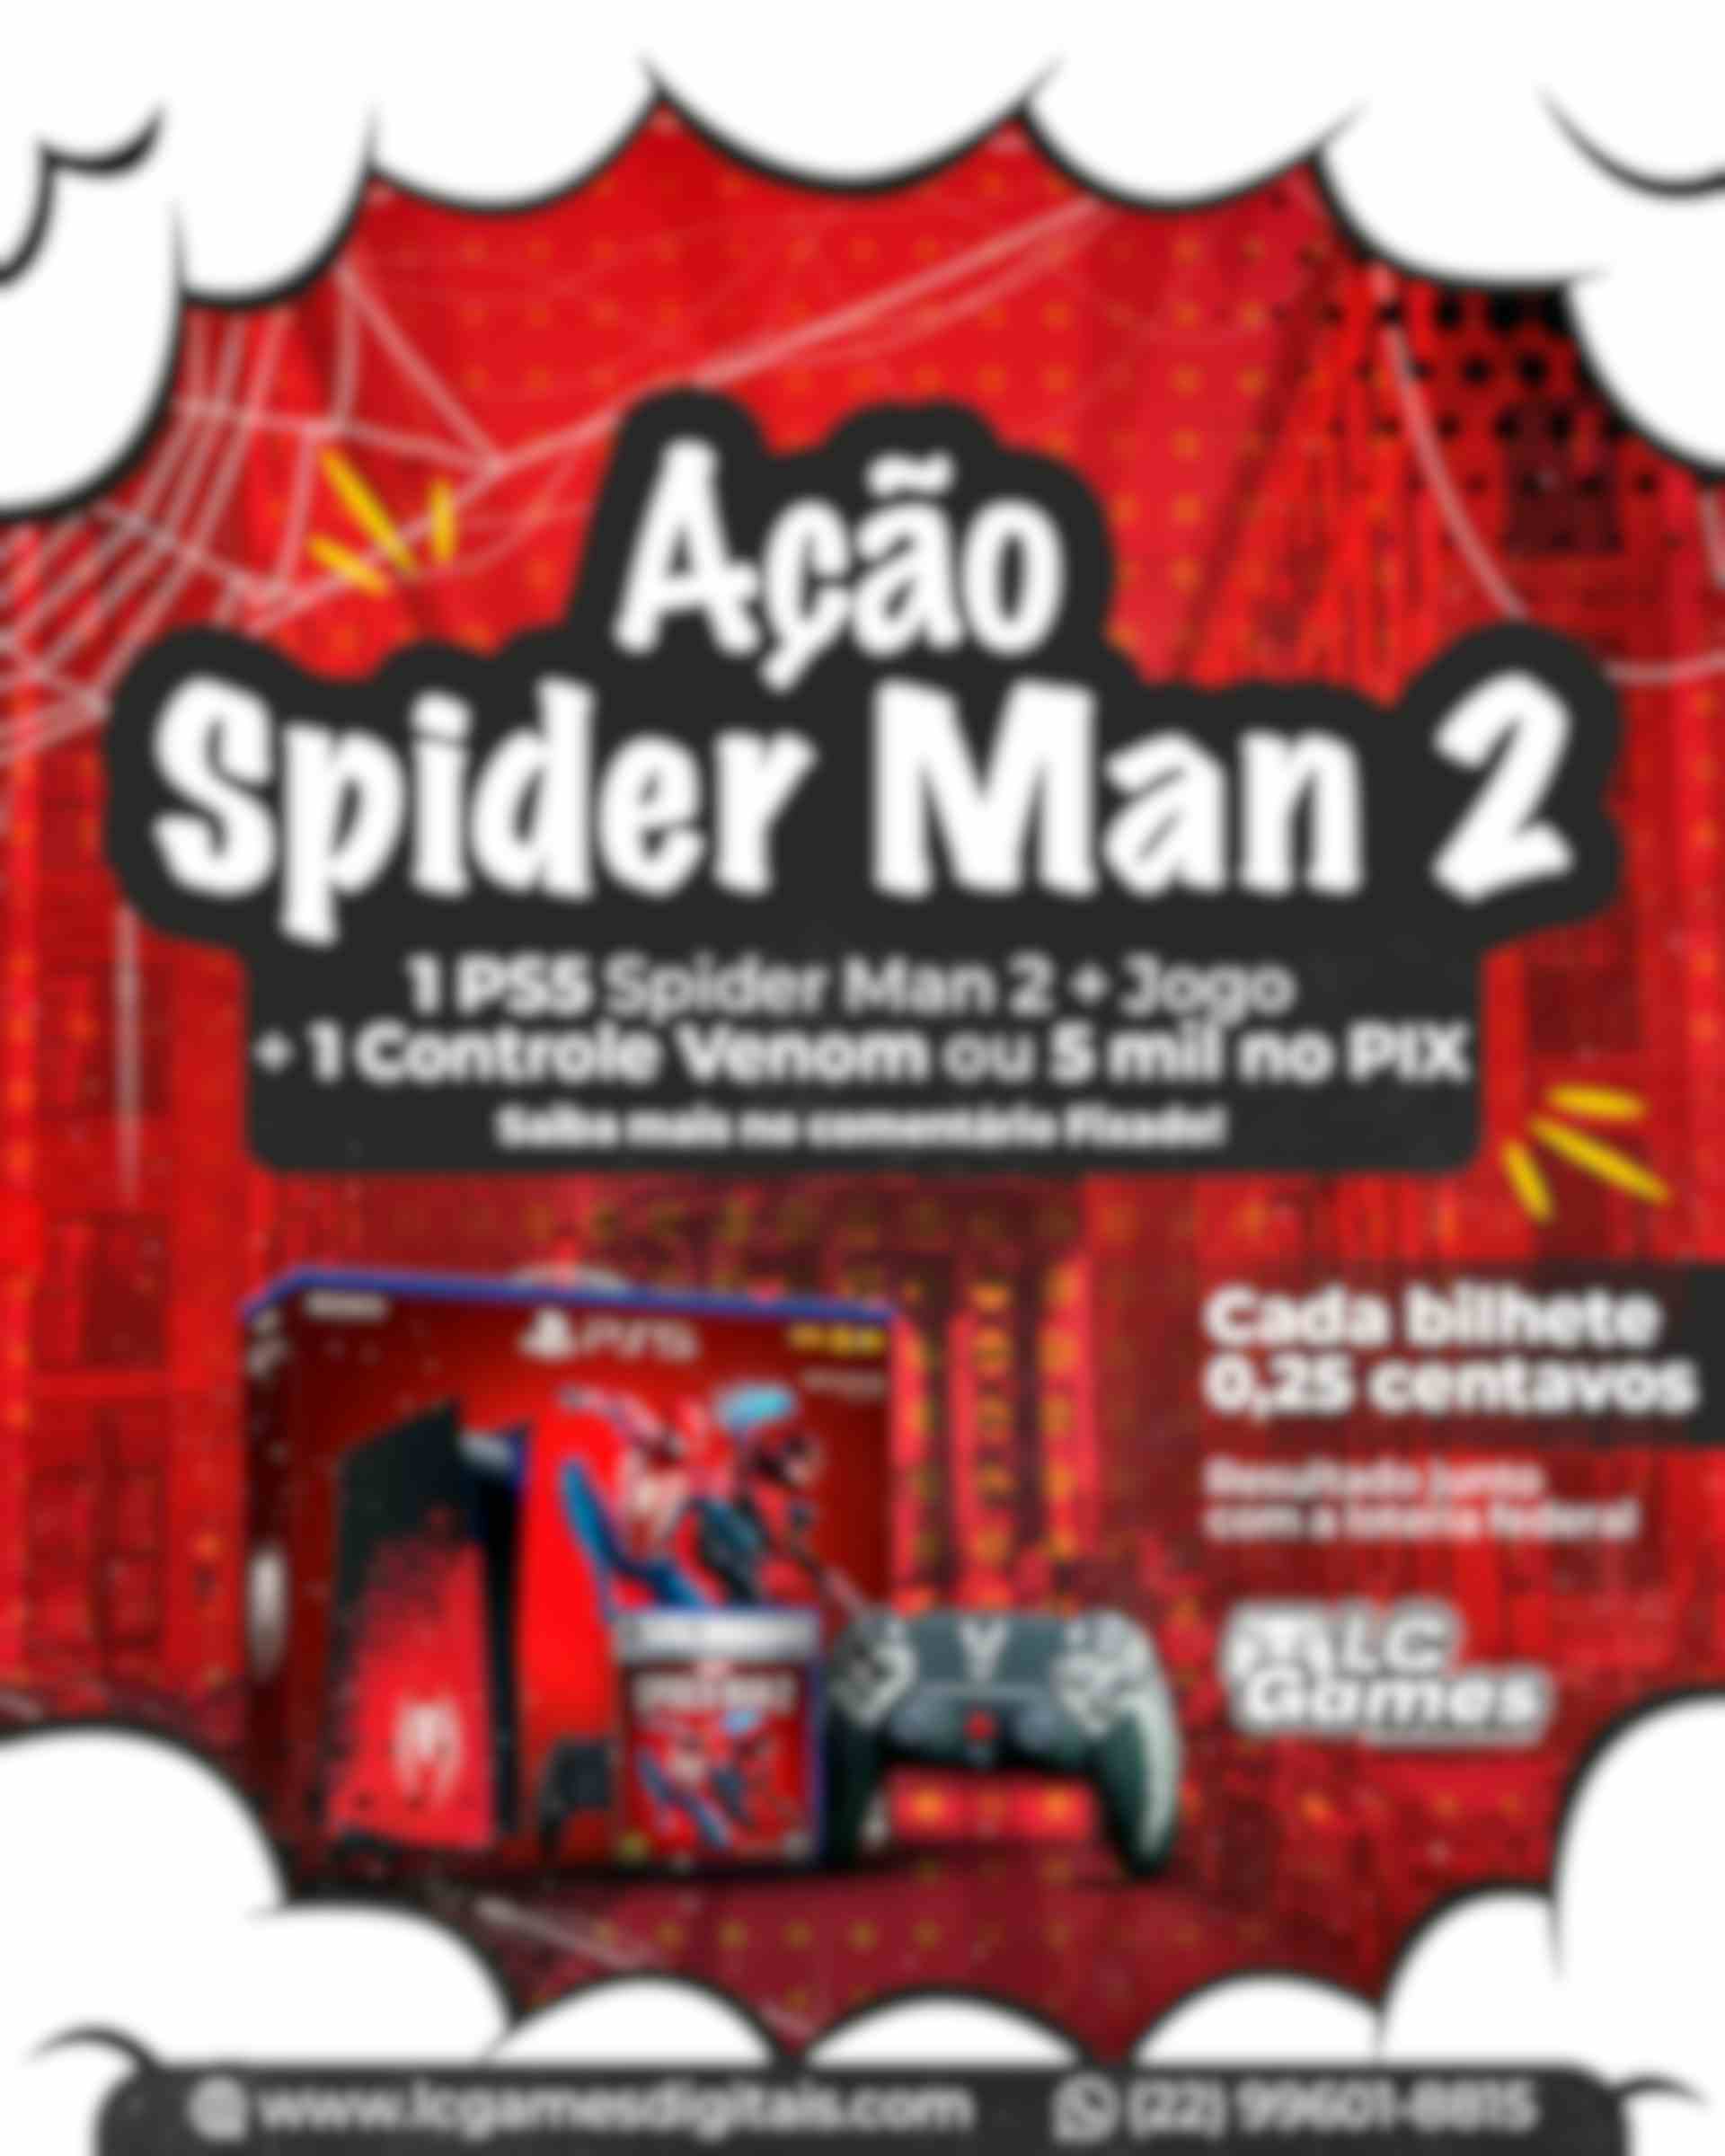 AÇÃO SPIDER MAN - PS5 SPIDER MAN 2 + CONTROLE VENON + JOGO SPIDER MAN 2 ou 5 MIL NO PIX